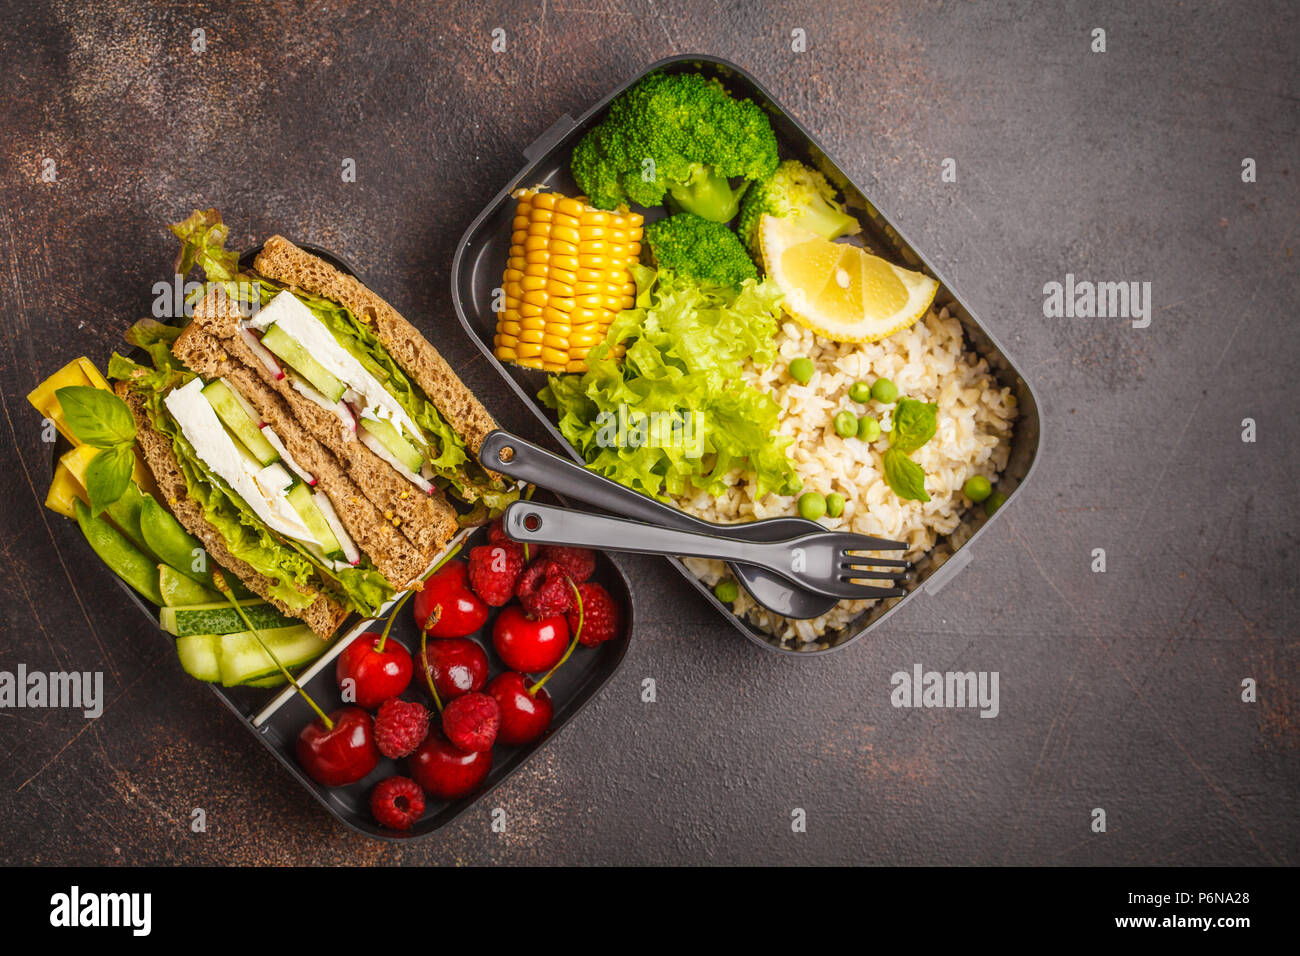 Préparation des repas sains avec des contenants sandwich feta avec fruits, baies, légumes et riz. Concept alimentaire végétarien sain. La nourriture à emporter. Banque D'Images